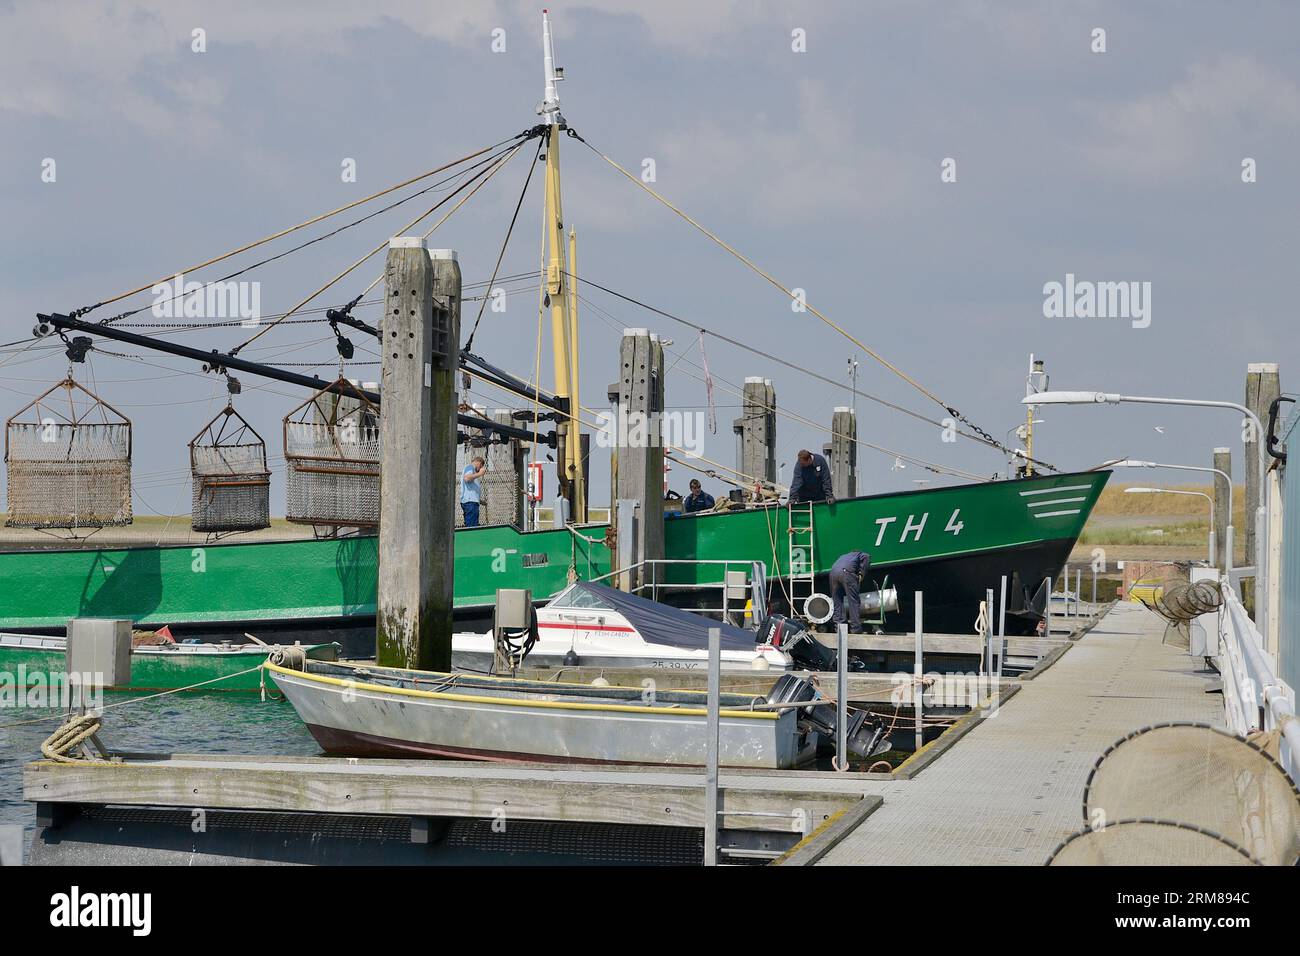 Bateau de pêche vert avec des filets de chalutage surélevés maintenu dans le port d'attache, Bergsediepsluis, Tholen Banque D'Images